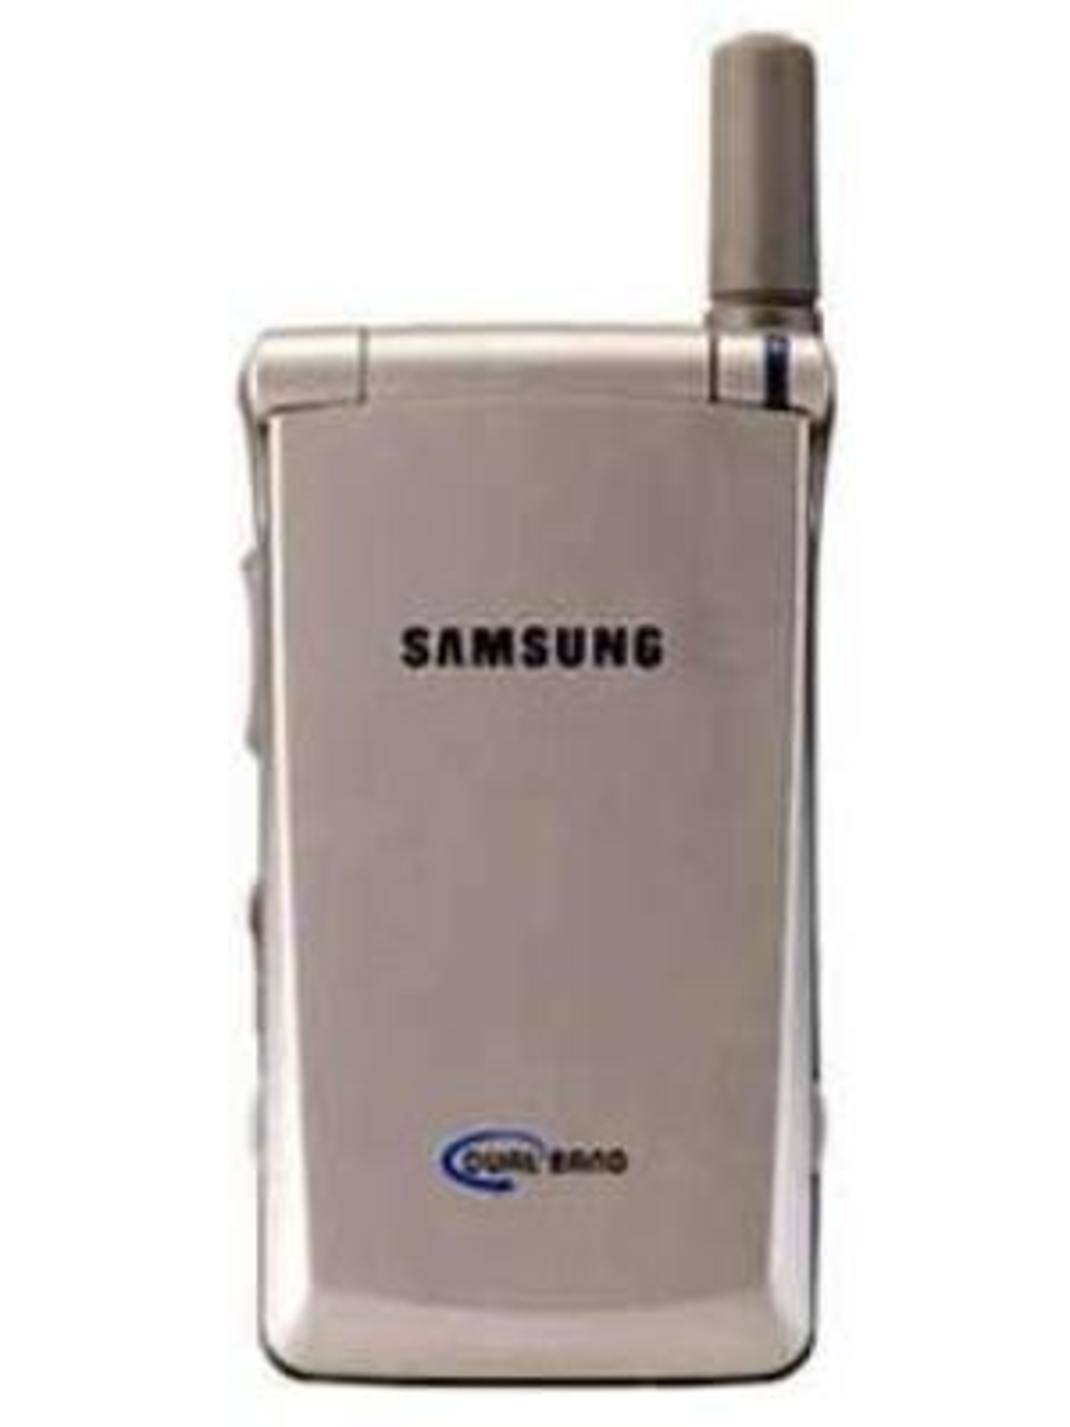 Samsung SGH 100